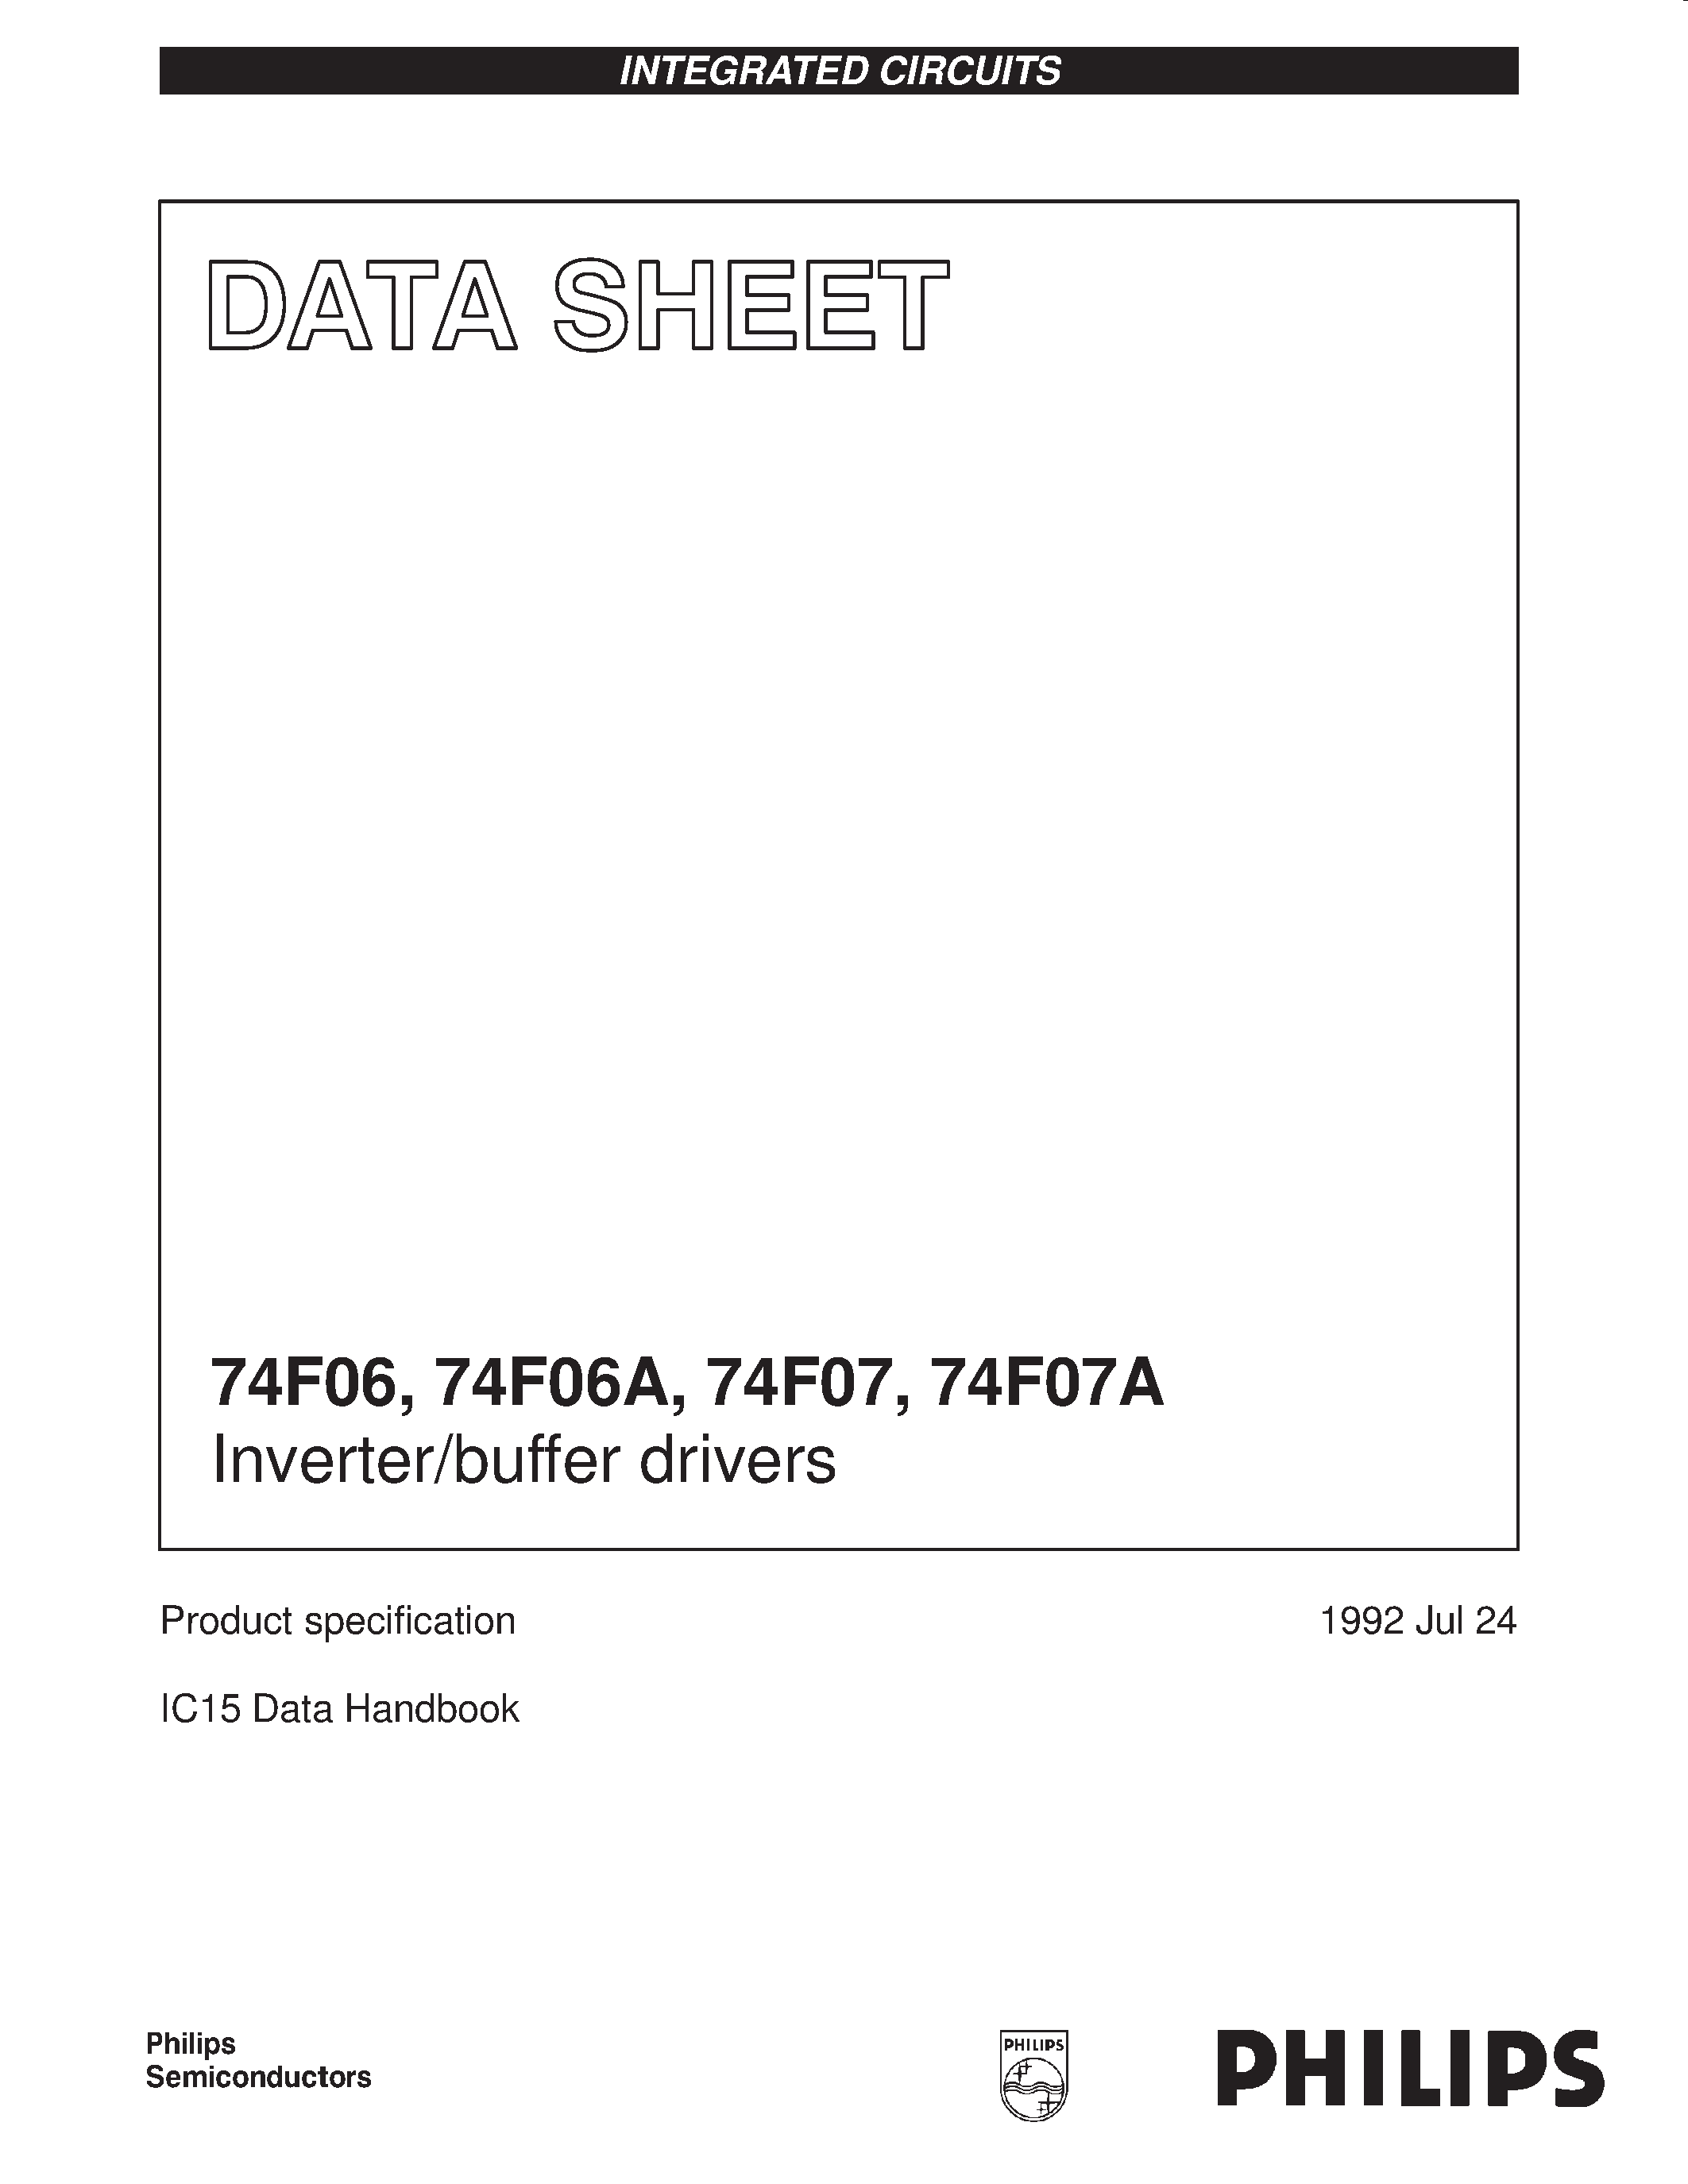 Даташит 74F06A - Inverter/buffer drivers страница 1